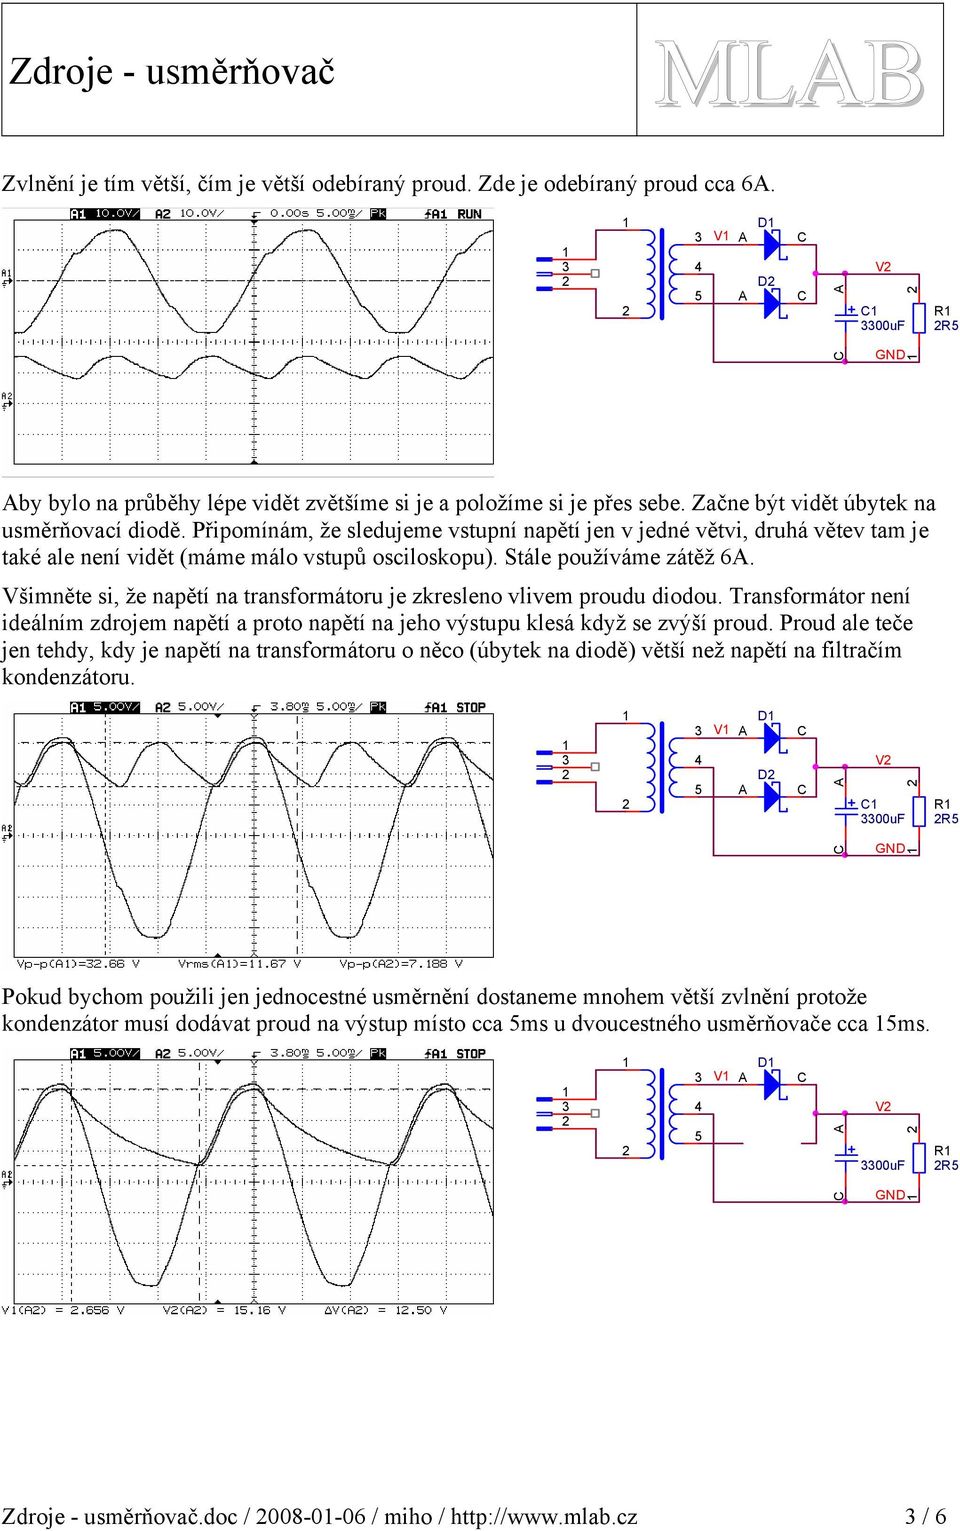 Všimněte si, že napětí na transformátoru je zkresleno vlivem proudu diodou. Transformátor není ideálním zdrojem napětí a proto napětí na jeho výstupu klesá když se zvýší proud.